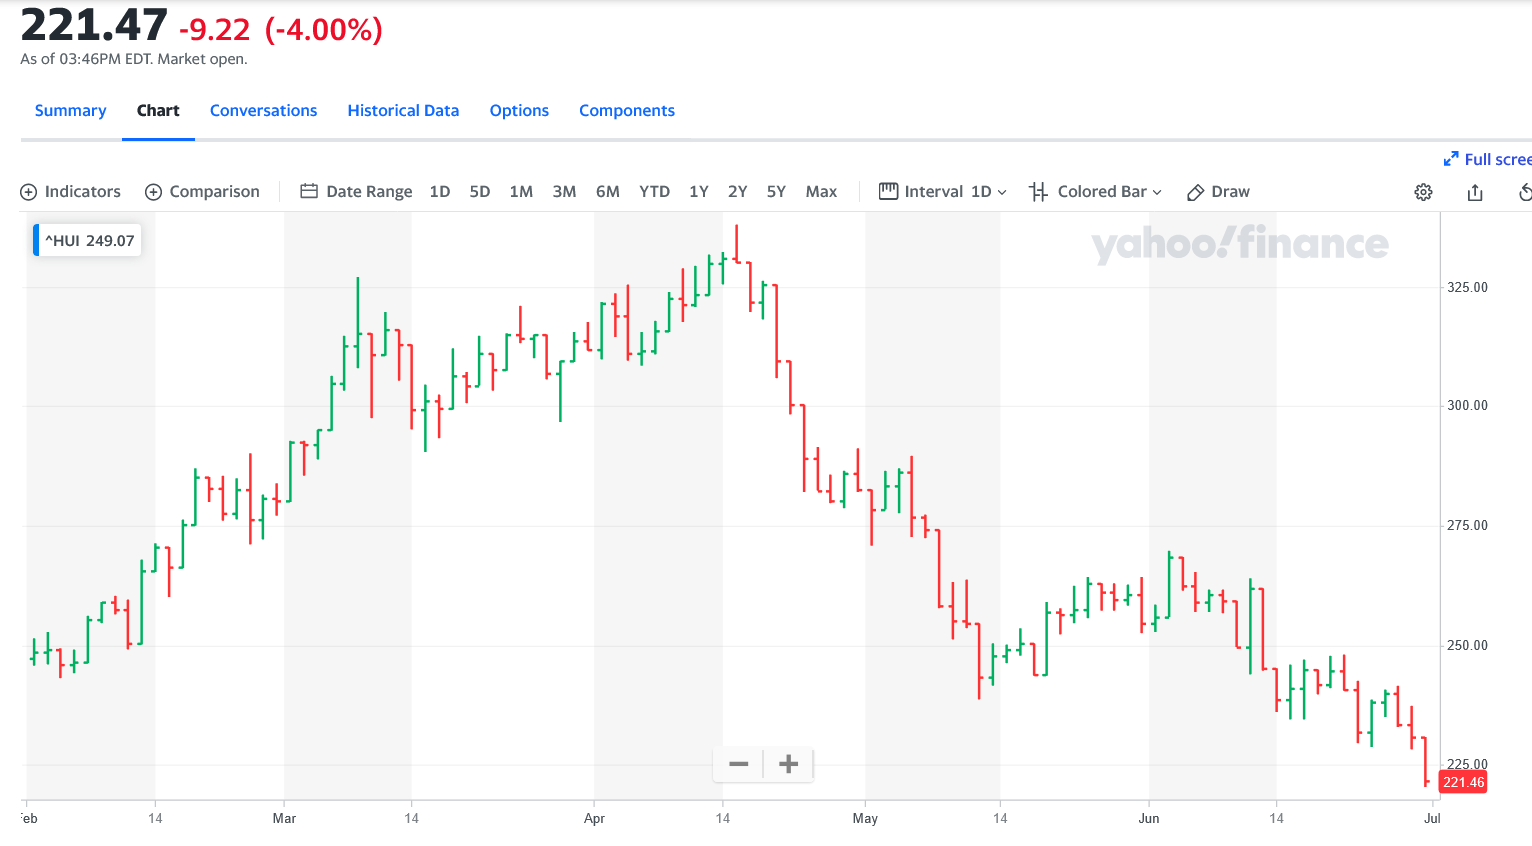 Screenshot 2022-06-30 at 16-01-29 NYSE ARCA GOLD BUGS INDEX (^HUI) Charts Data & News - Yahoo Finance.png